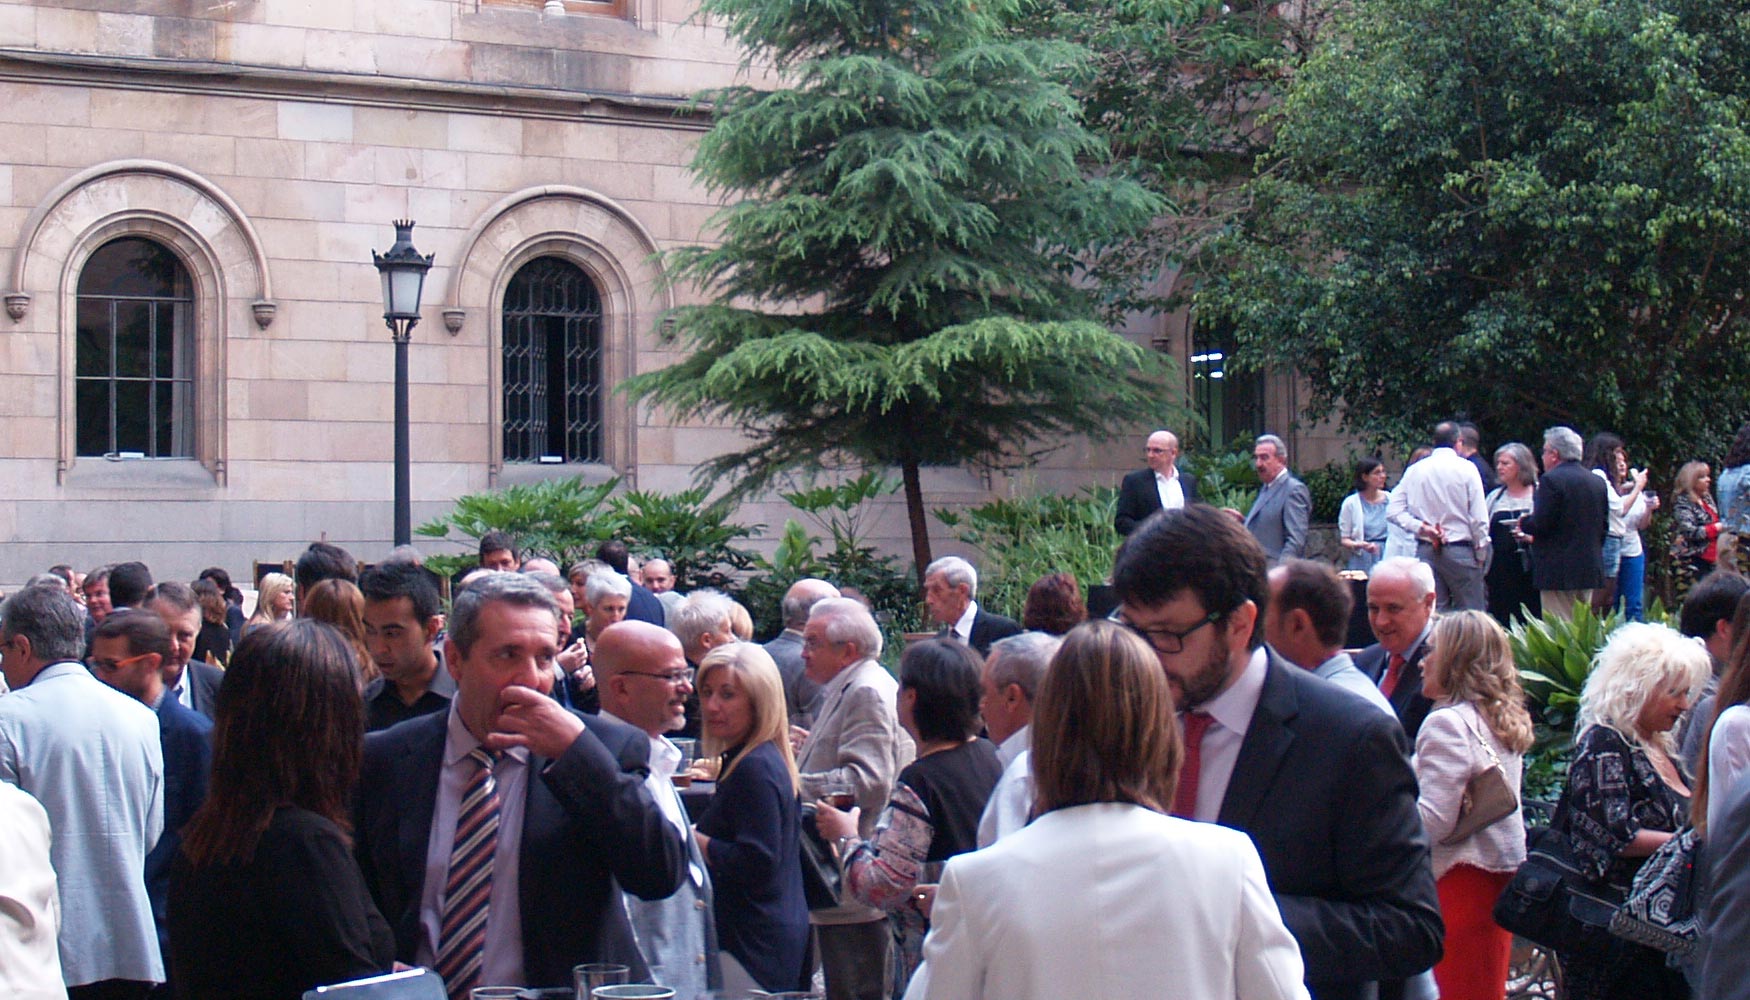 La gala grfica empez con un cctel en los jardines de la Universidad de Barcelona. Foto: Monmar Comunicaci